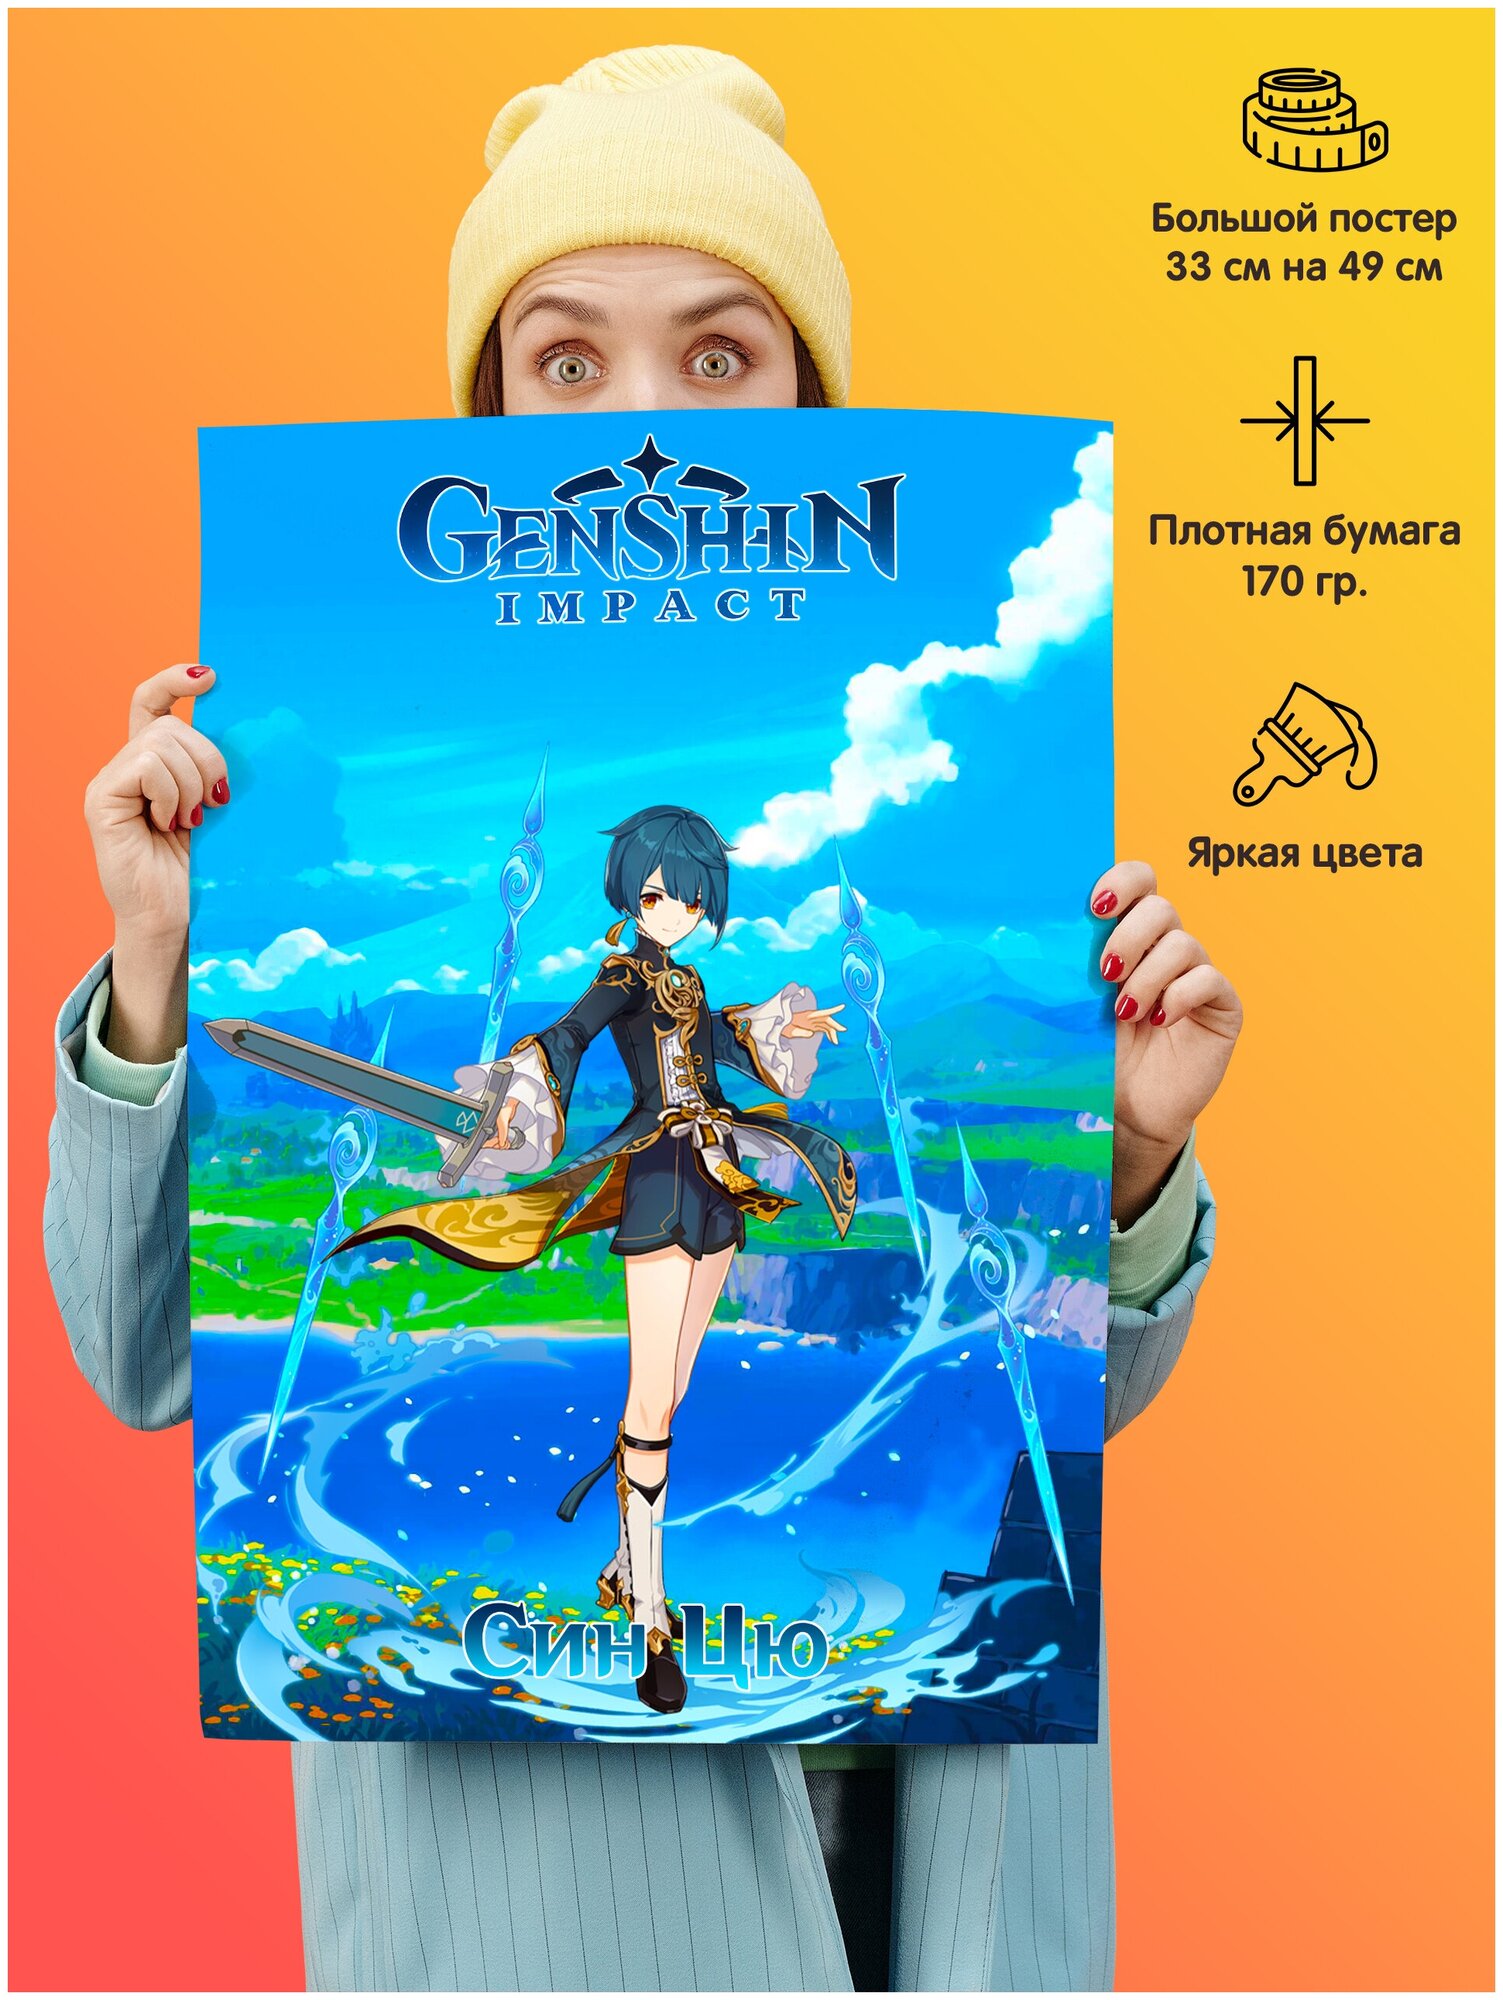 Плакат постер 49*33 см Геншин Импакт Genshin Impact Син Цю